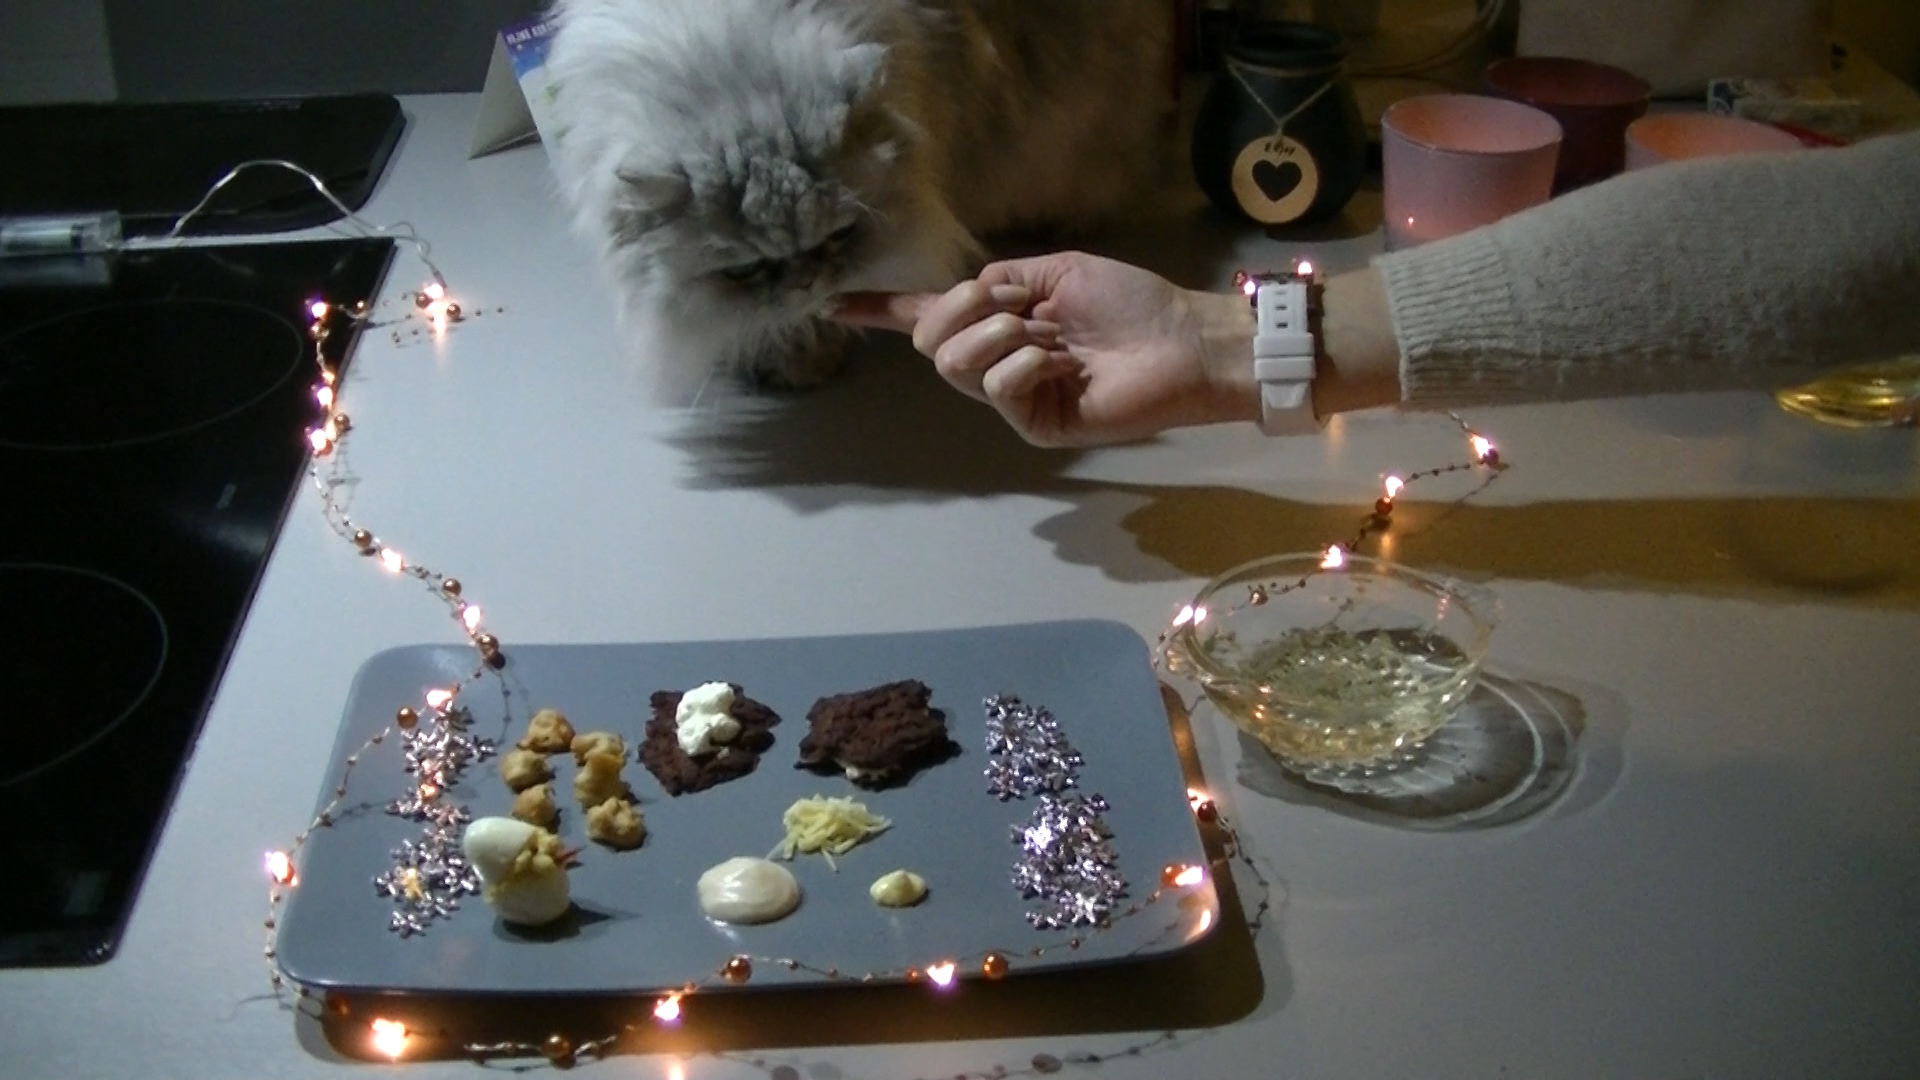 Silver de kat eet kattenvriendelijk kerstdiner